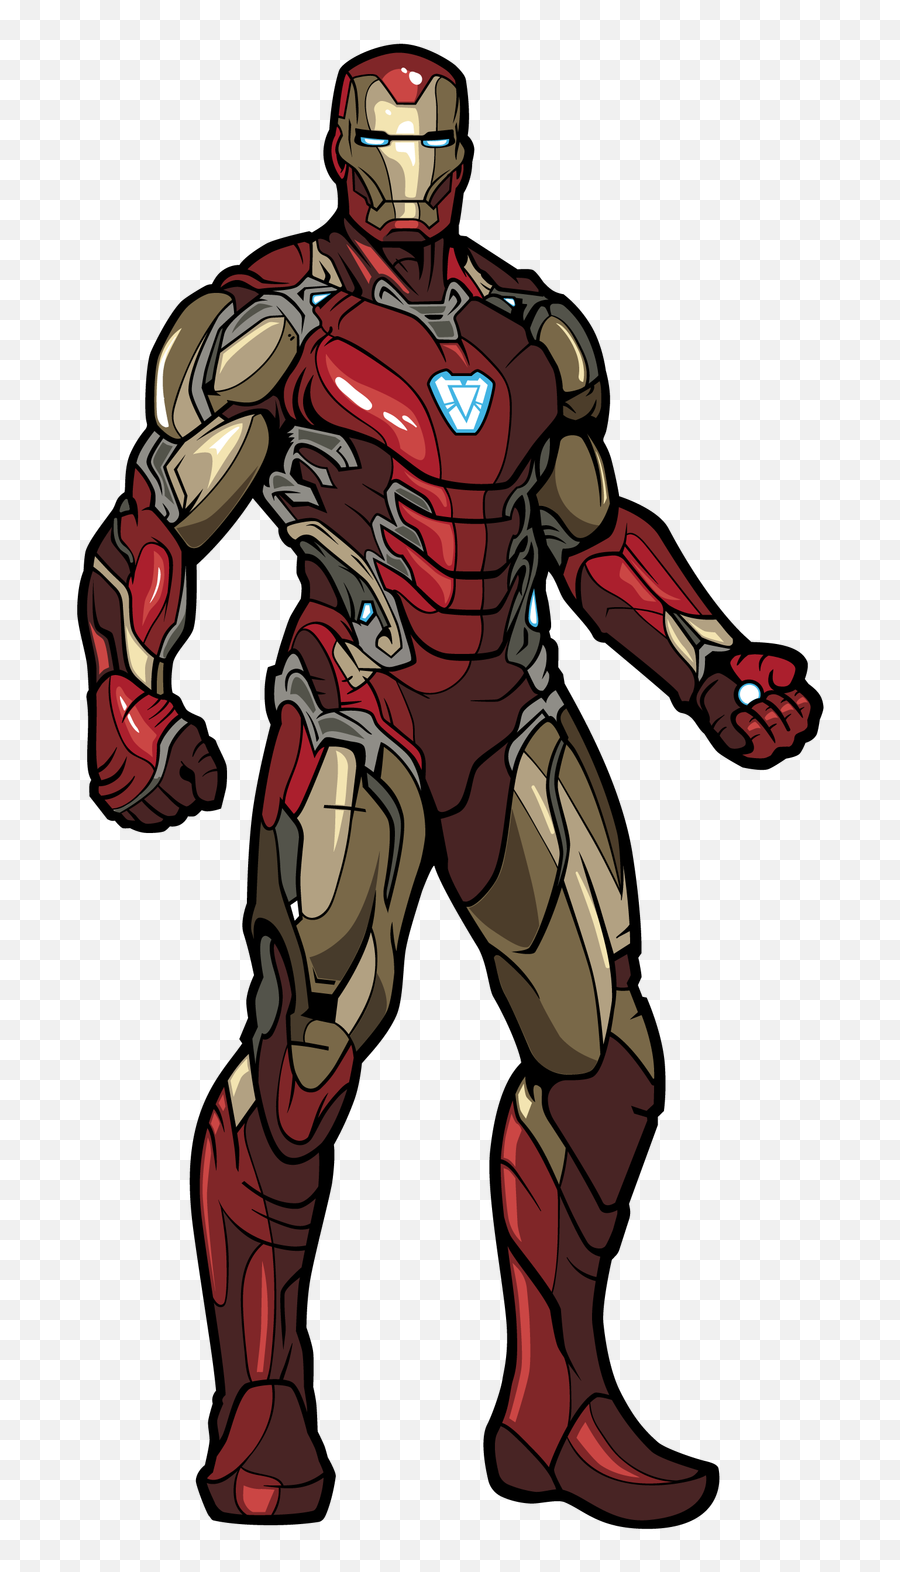 Iron Man - Avengers Endgame Iron Man Figure Png,Iron Man Comic Png